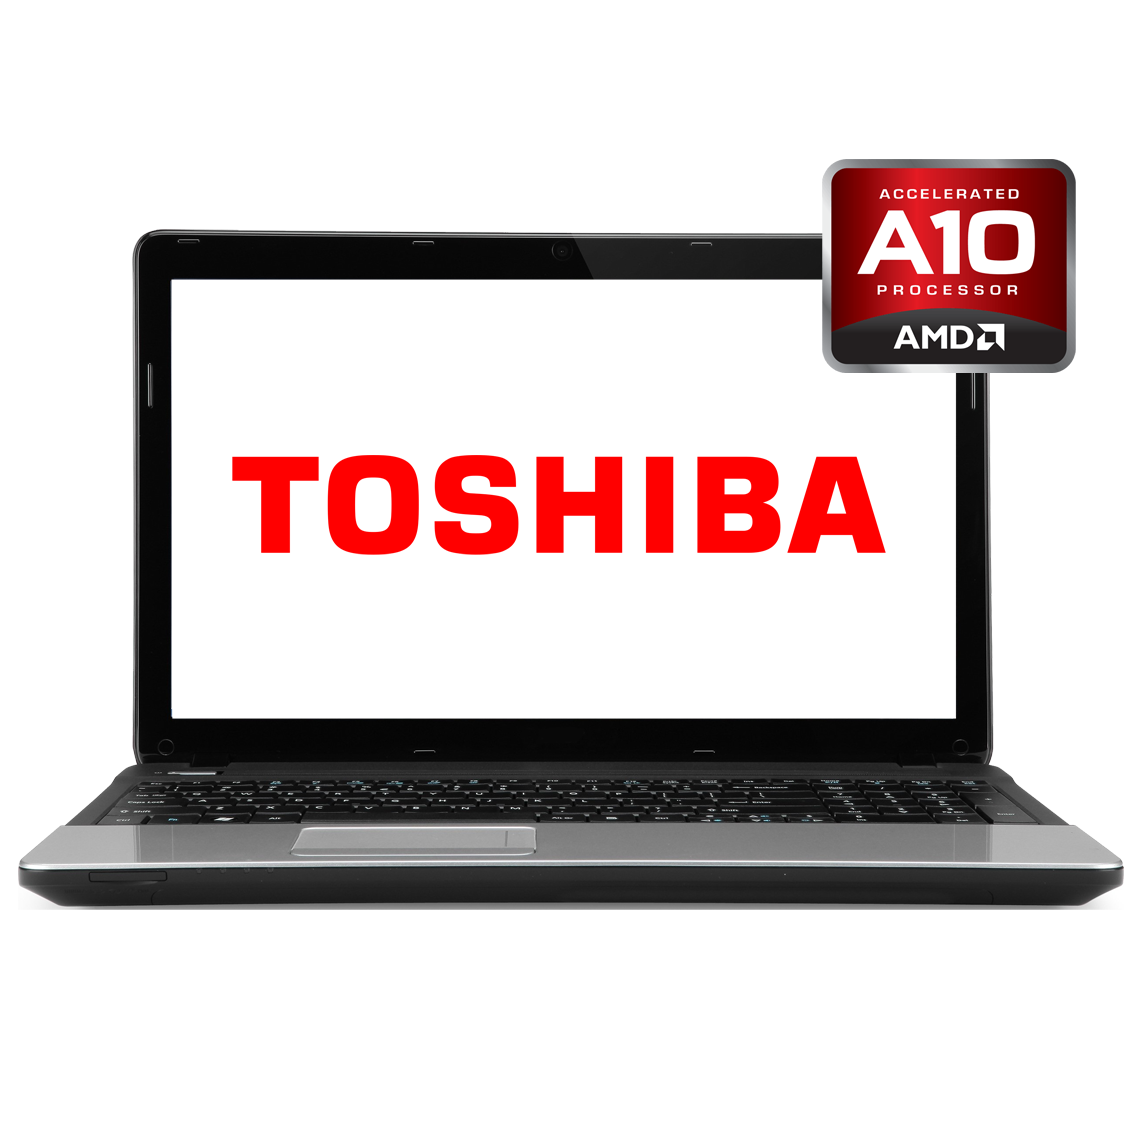 Toshiba - 17.3 inch AMD A10